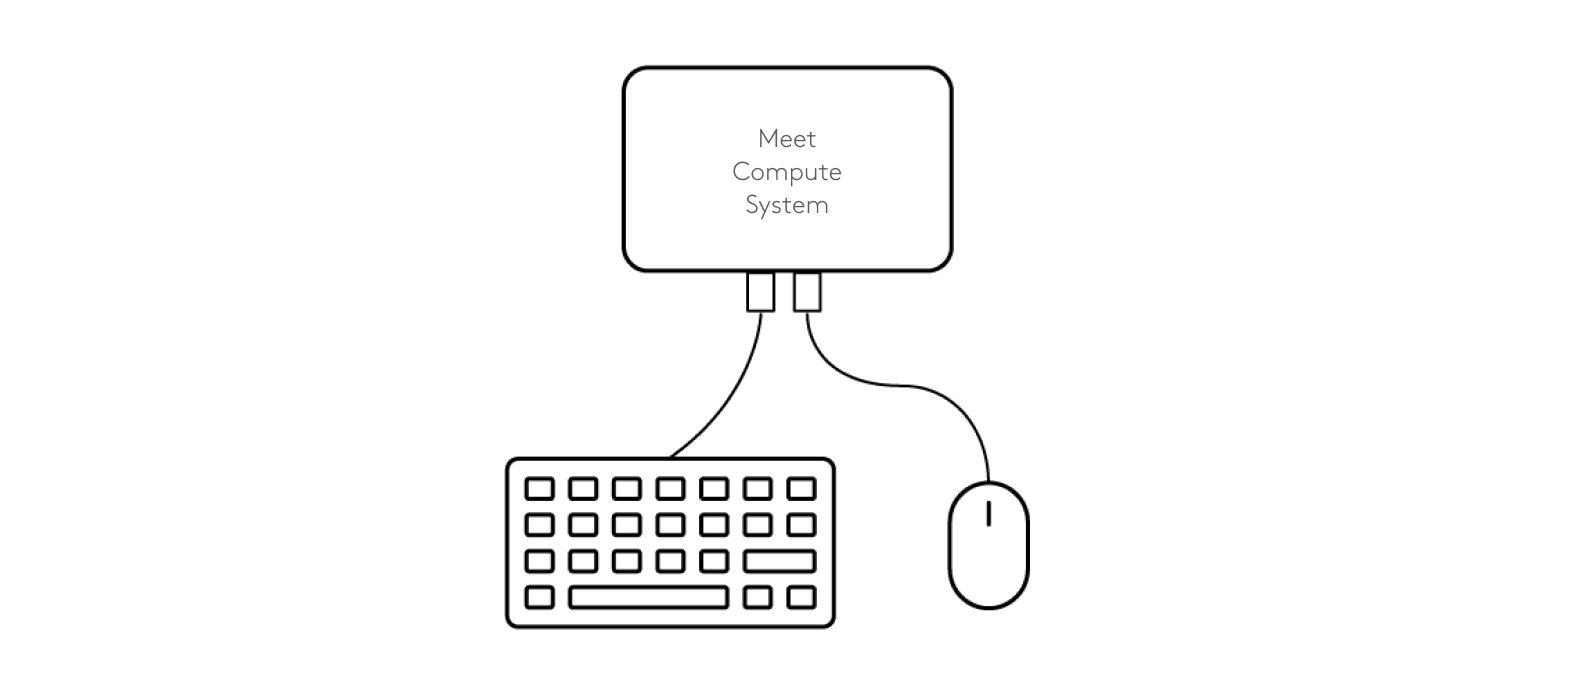 Schéma de connexion du clavier et de la souris au système Meet Compute